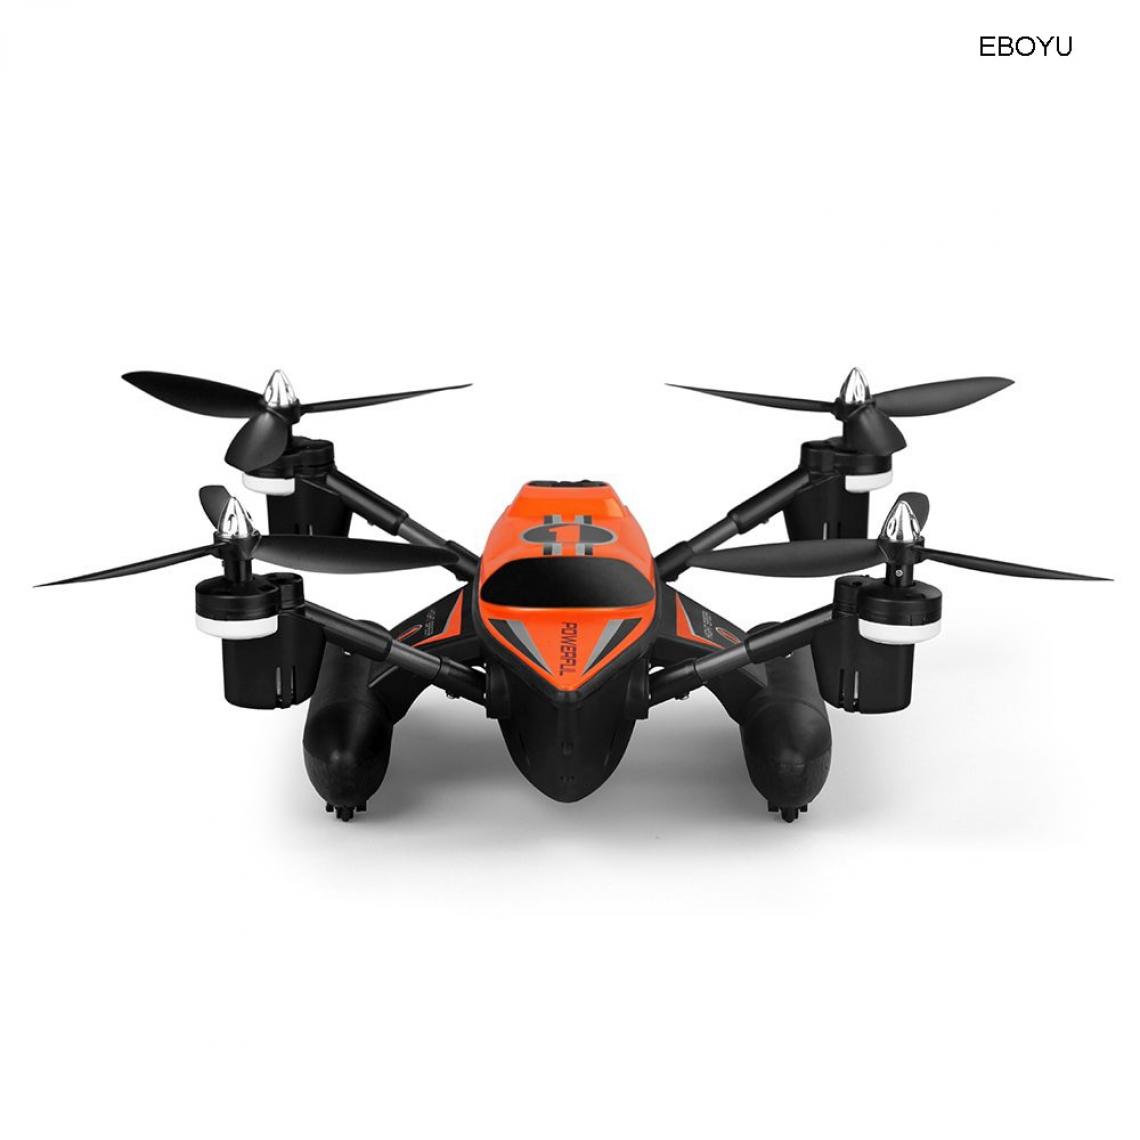 Universal - Q353 rapide rapide 2.4G 6 axes gyro air terre eau RC quadcopter mode sans tête une clé fermeture/retour RTF RC Drone | Drone | Quadcopter Drone(Le noir) - Hélicoptères RC